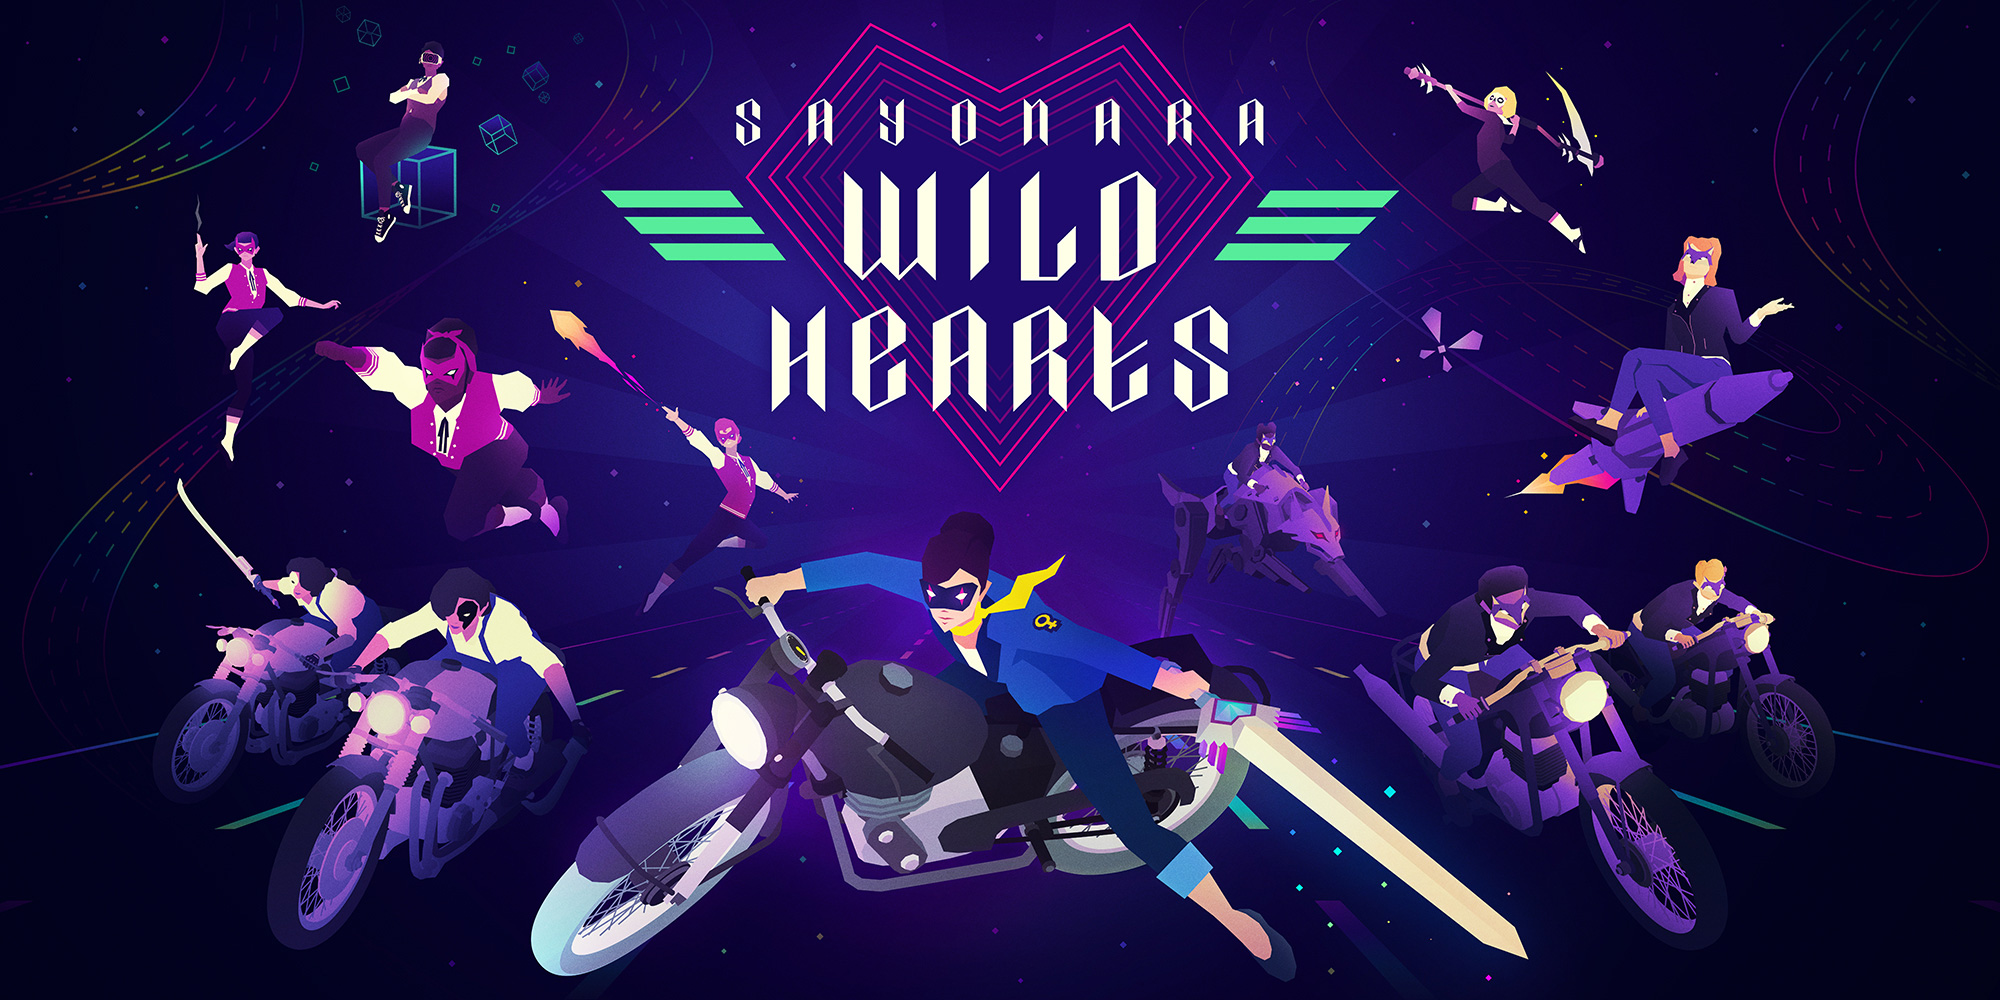 sayonara wild hearts album